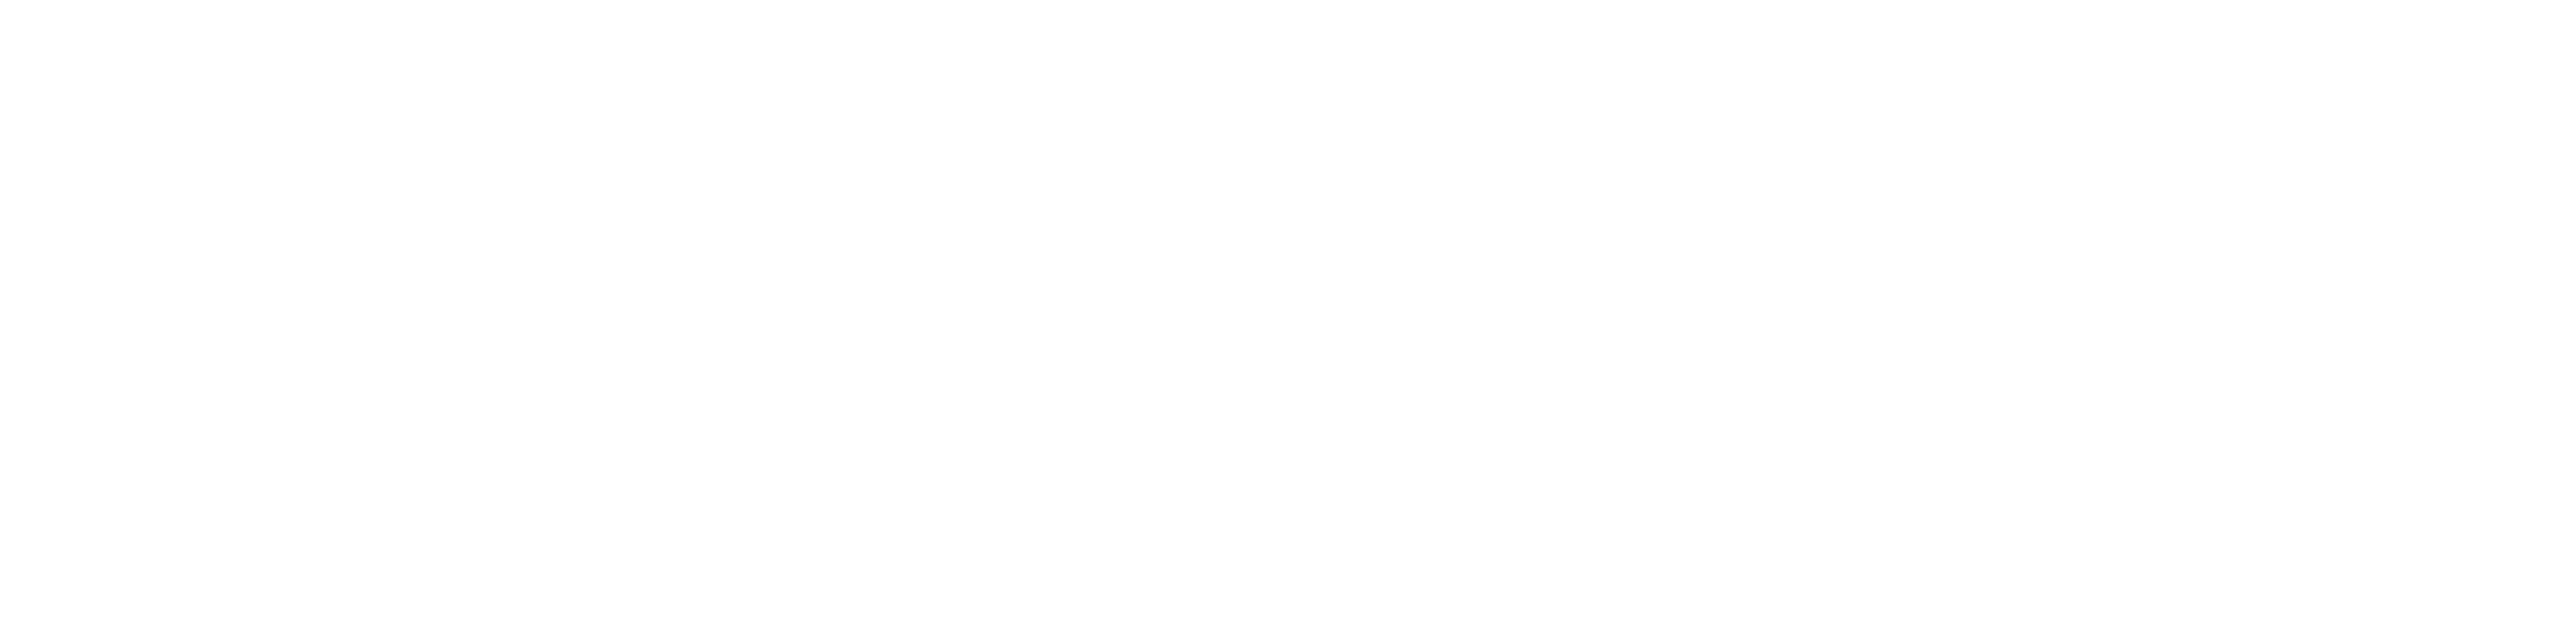 Met de steun van de Europese Unie